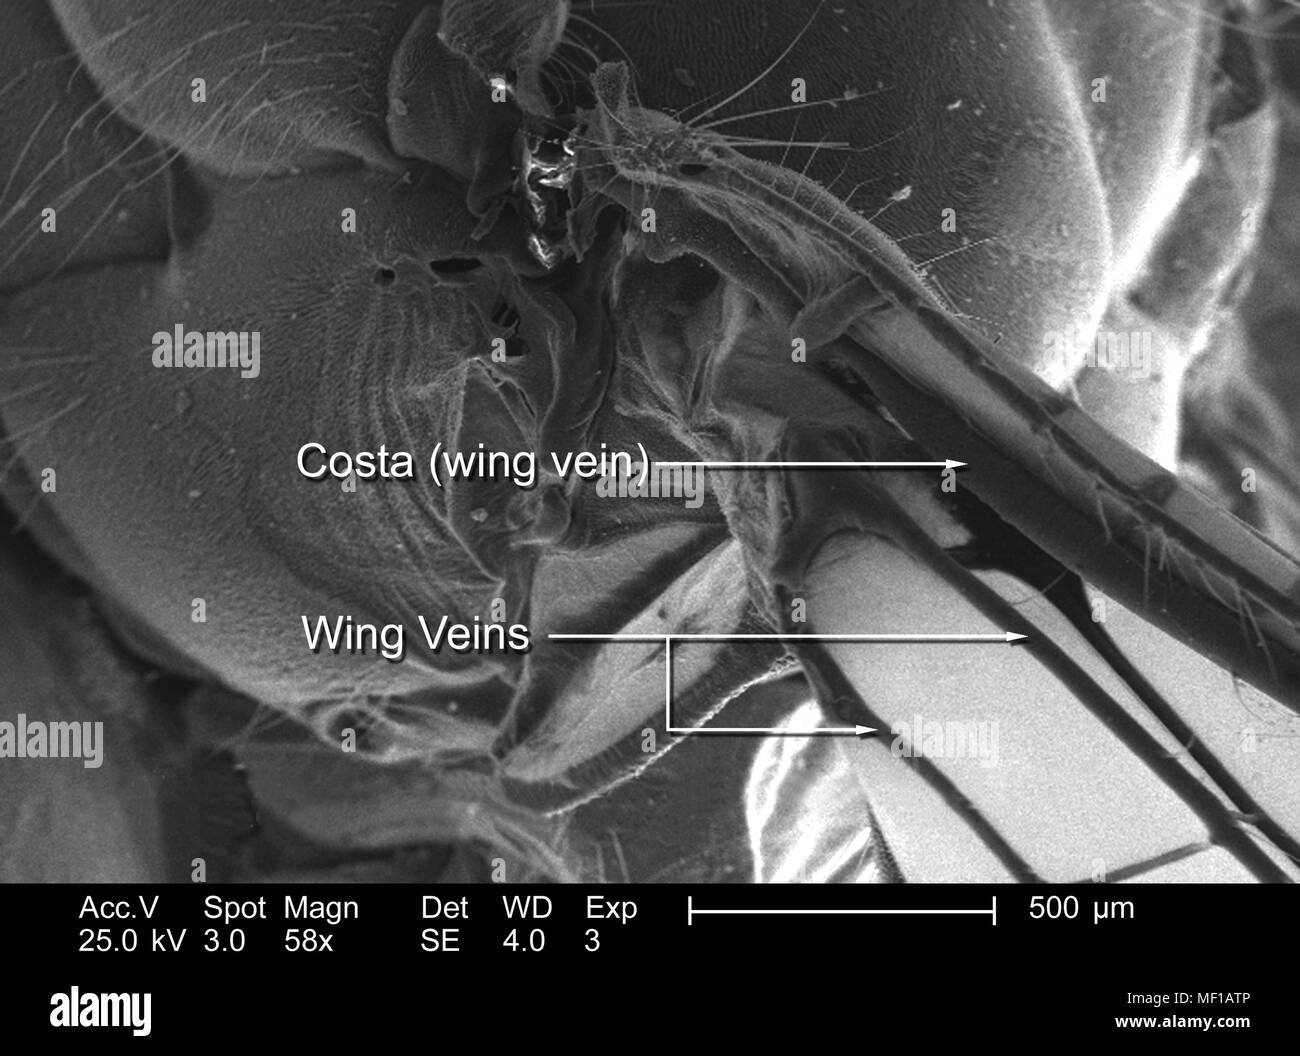 Dettagli morfologiche trovato su una libellula ala, raffigurato in 58x di scansione ingrandita al microscopio elettronico (SEM) immagine, 2005. Immagine cortesia di centri per il controllo delle malattie (CDC) / Janice Haney Carr, Connie fiori. () Foto Stock